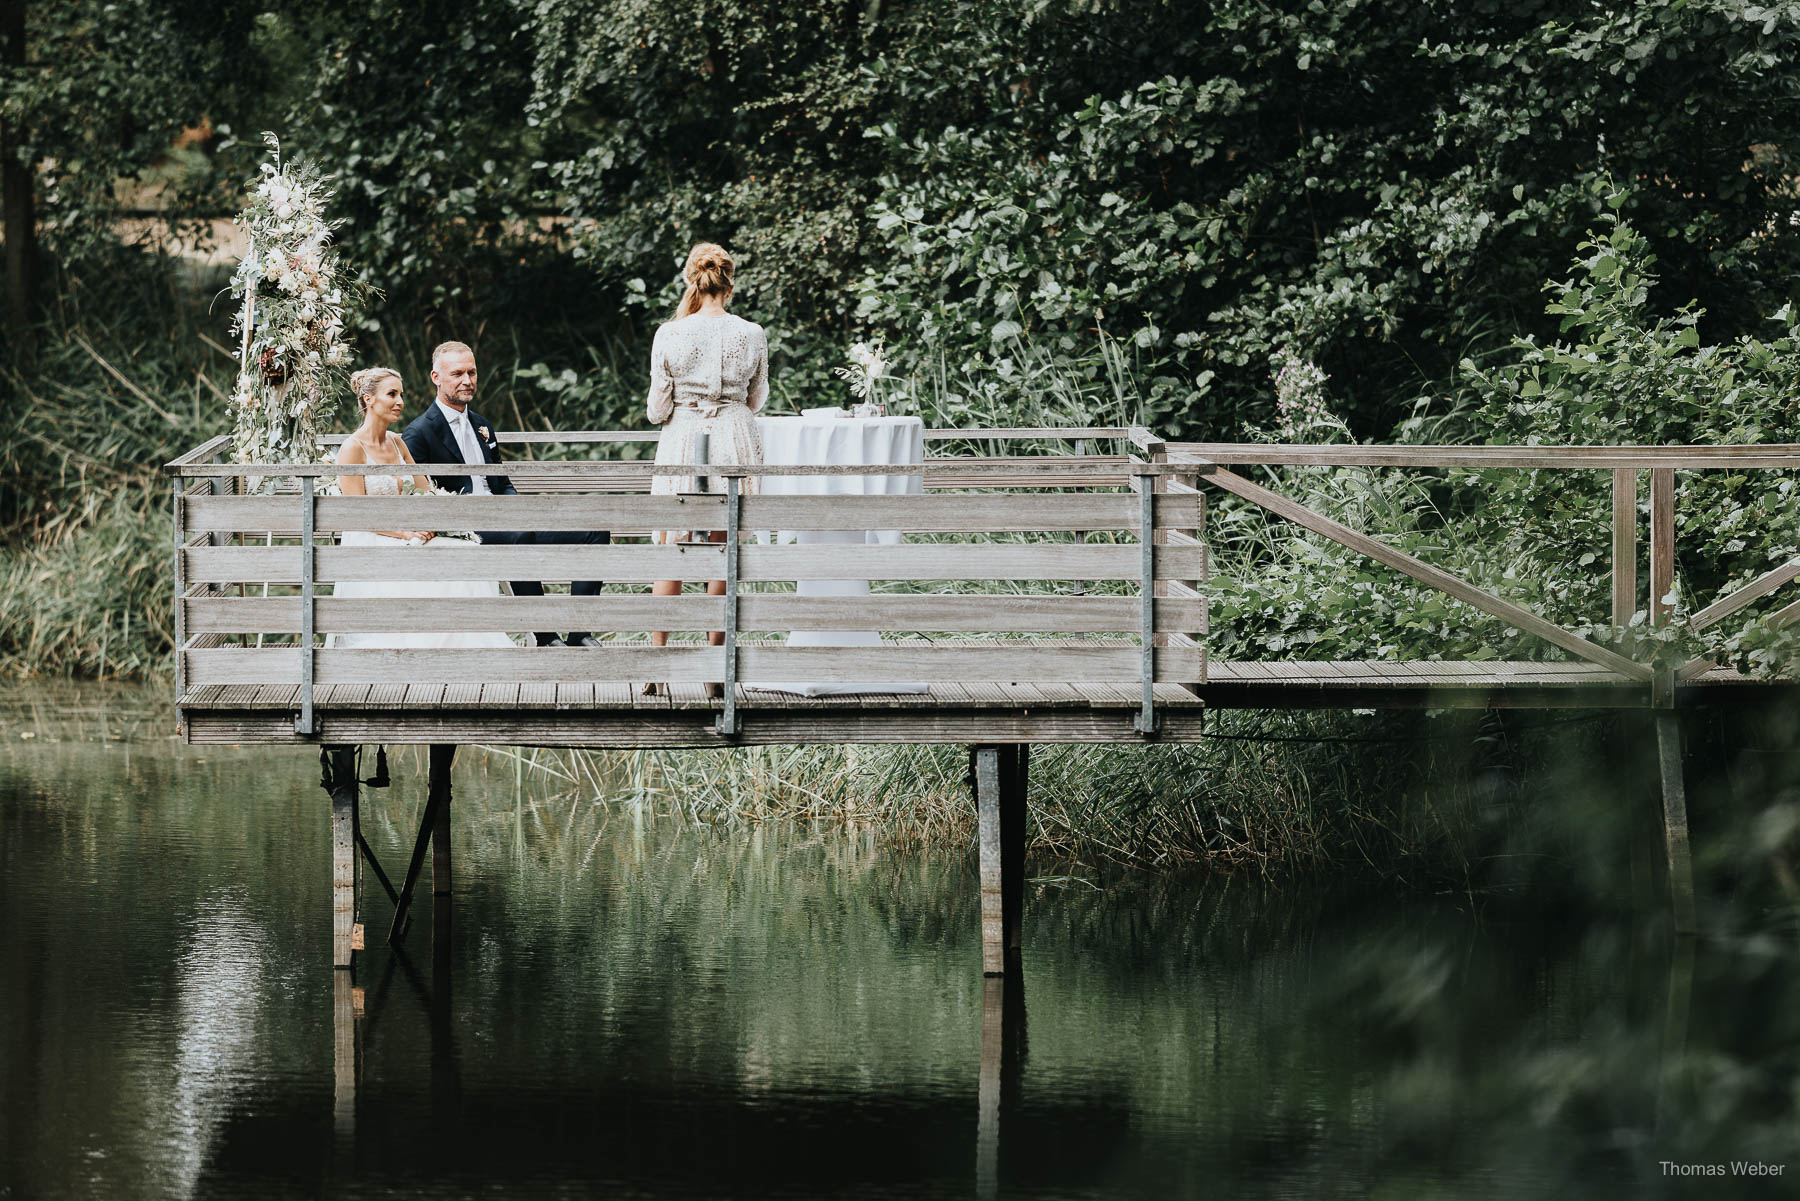 Freie Trauung am Mühlensee am Nordenholzer Hof in Hude, Hochzeitsfotograf Thomas Weber